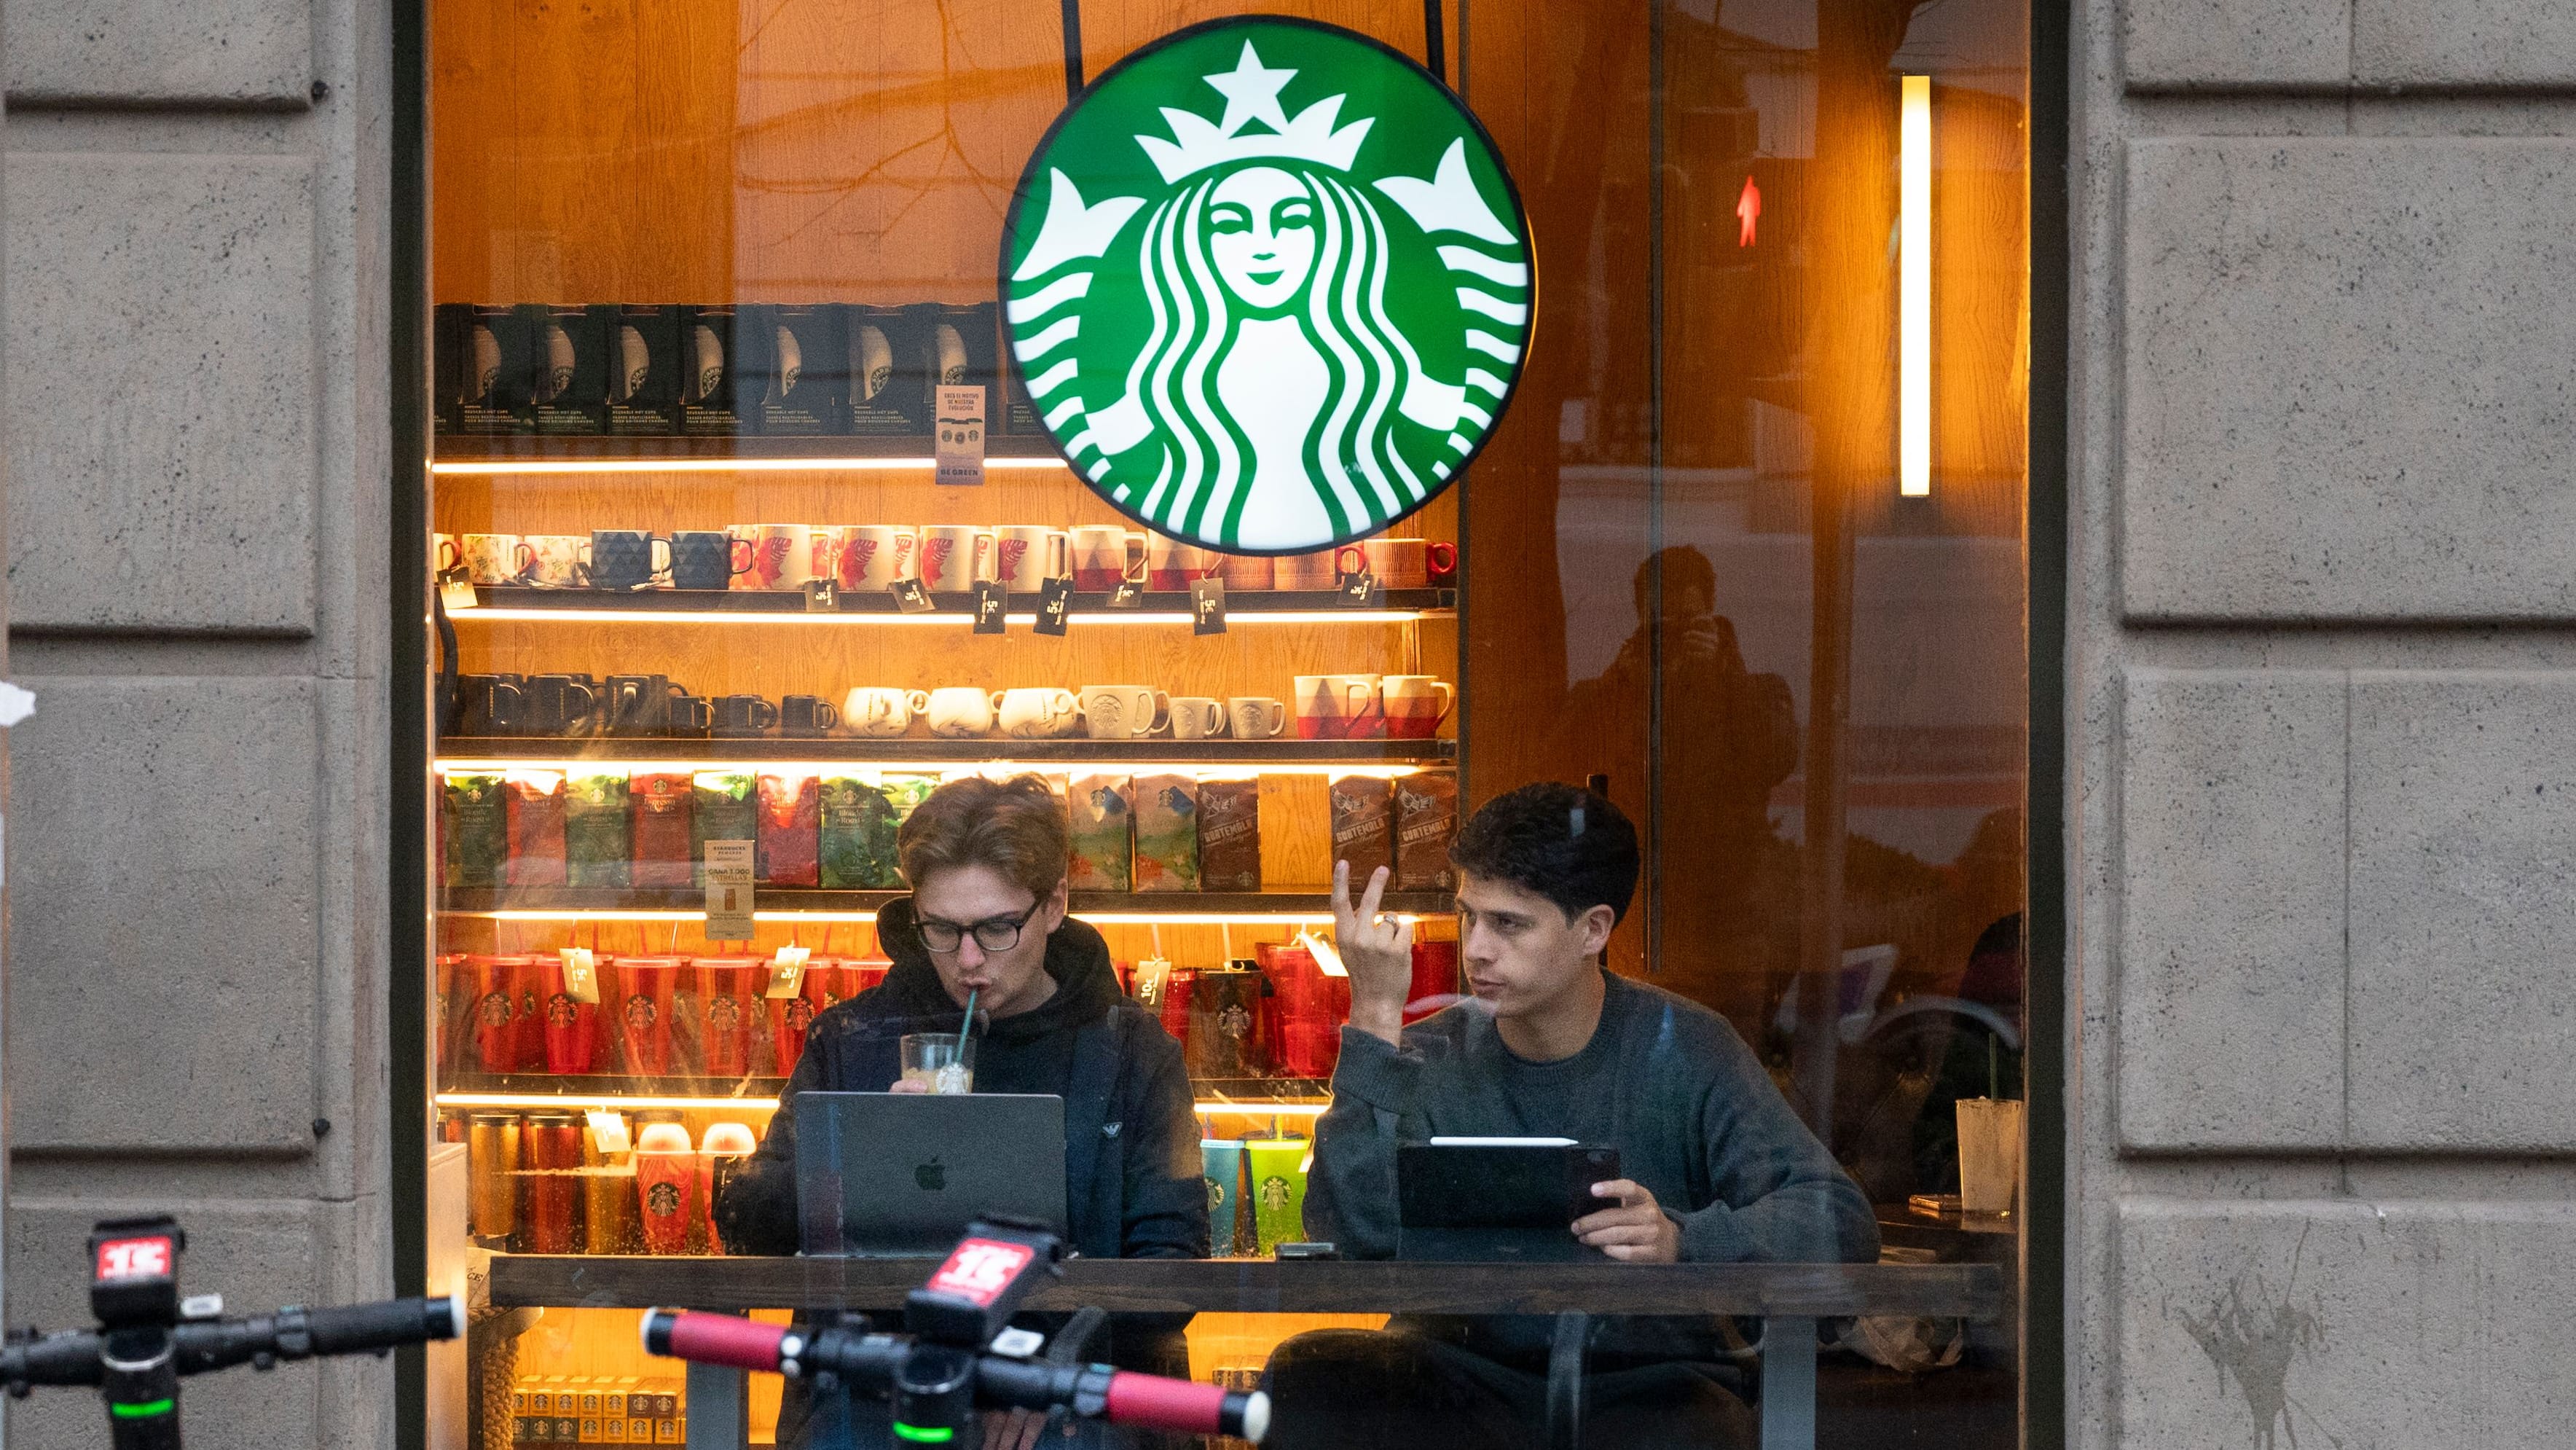 Starbucks-Aktie bricht ein: Kaffee-Kette hat zu viele Kunden in Rushhour